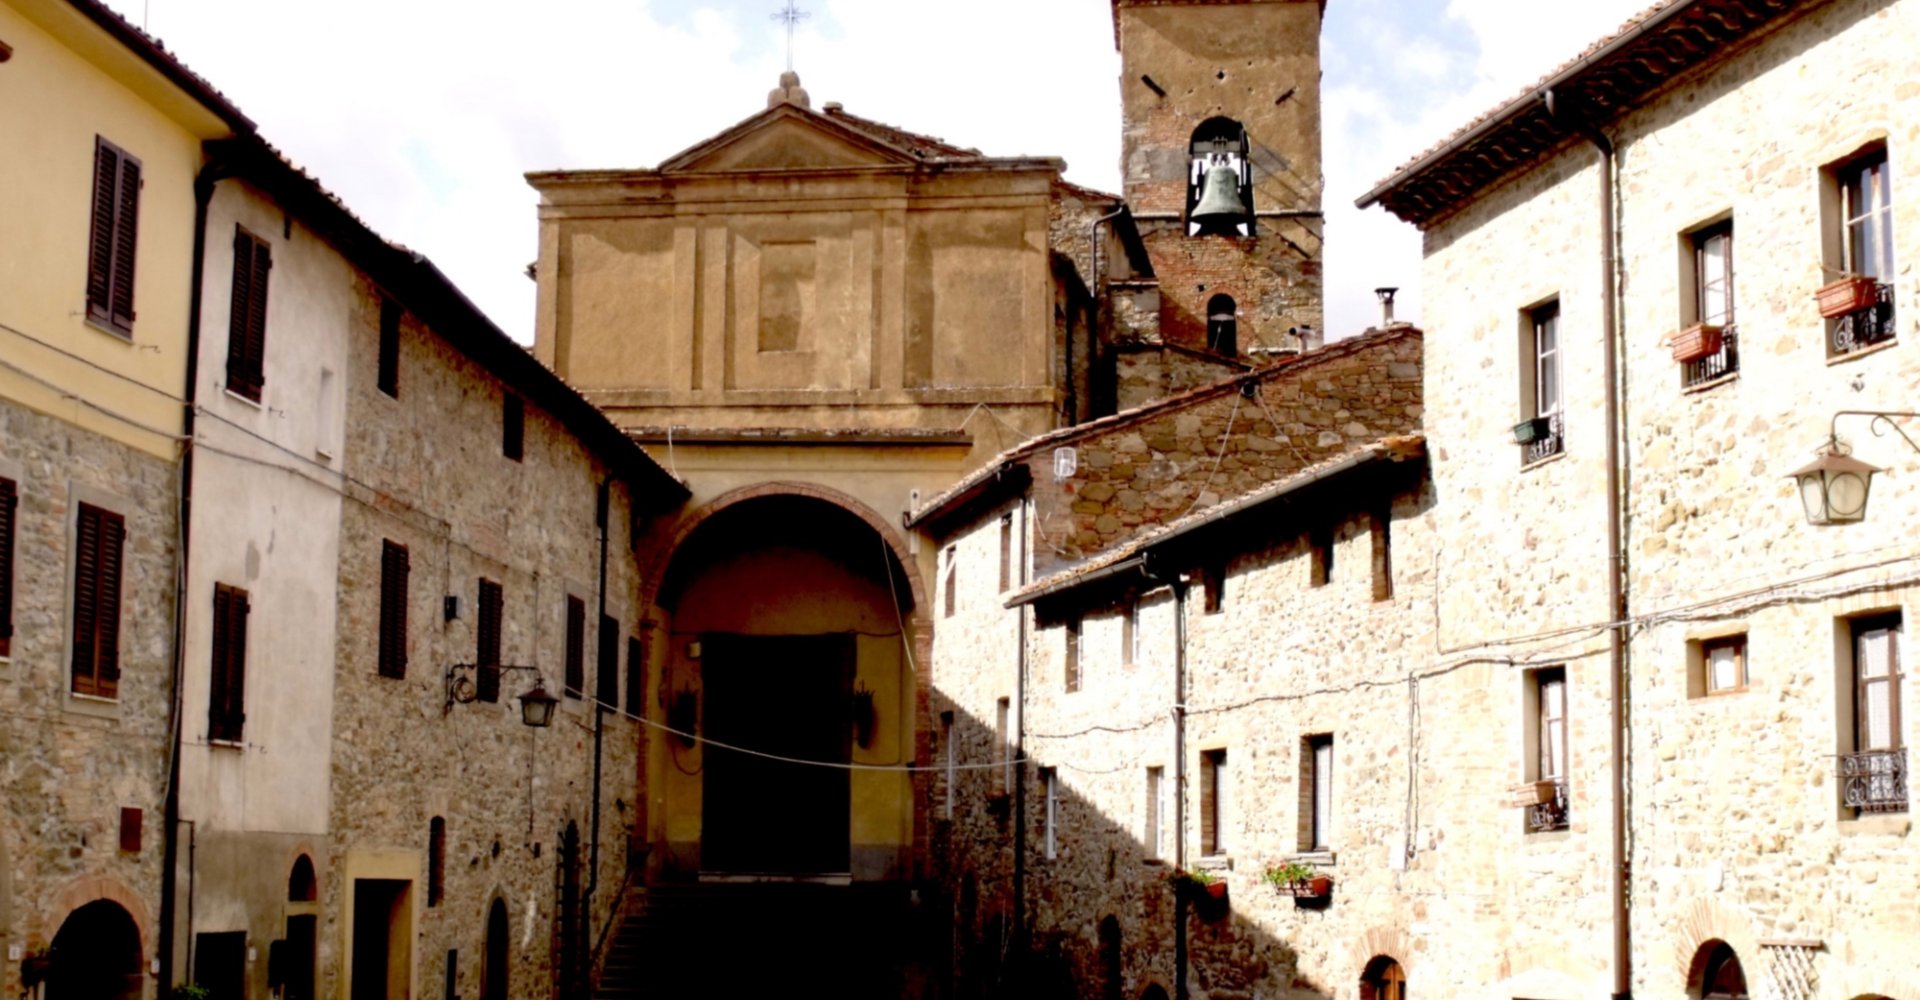 Church of San Donato - Chianni